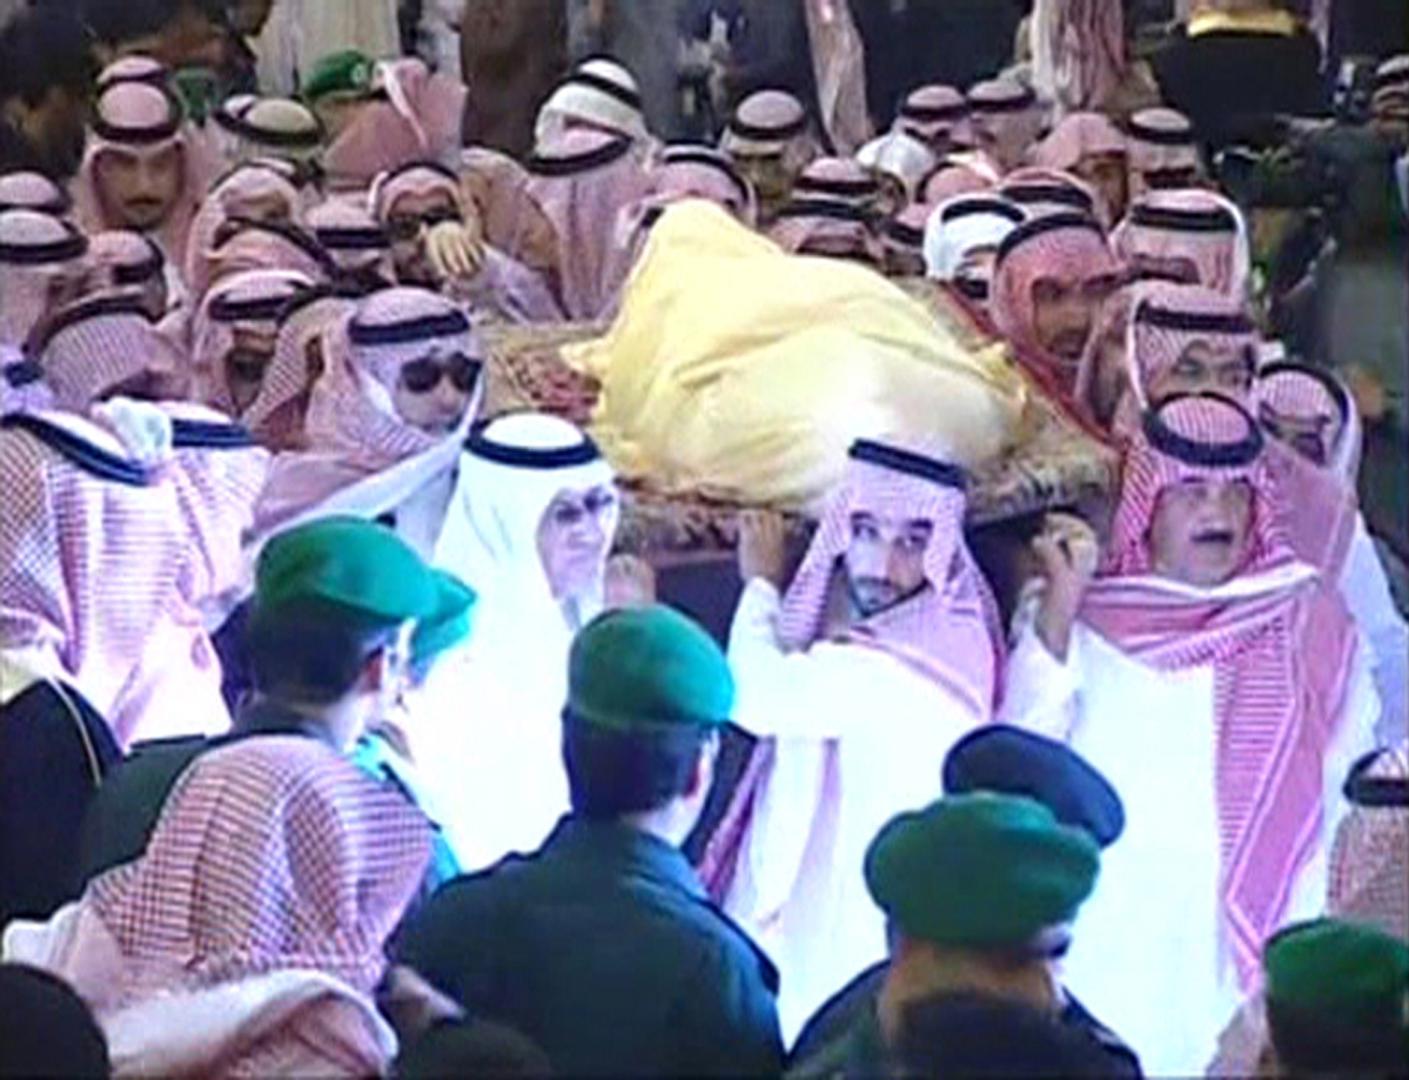 могила короля саудовской аравии